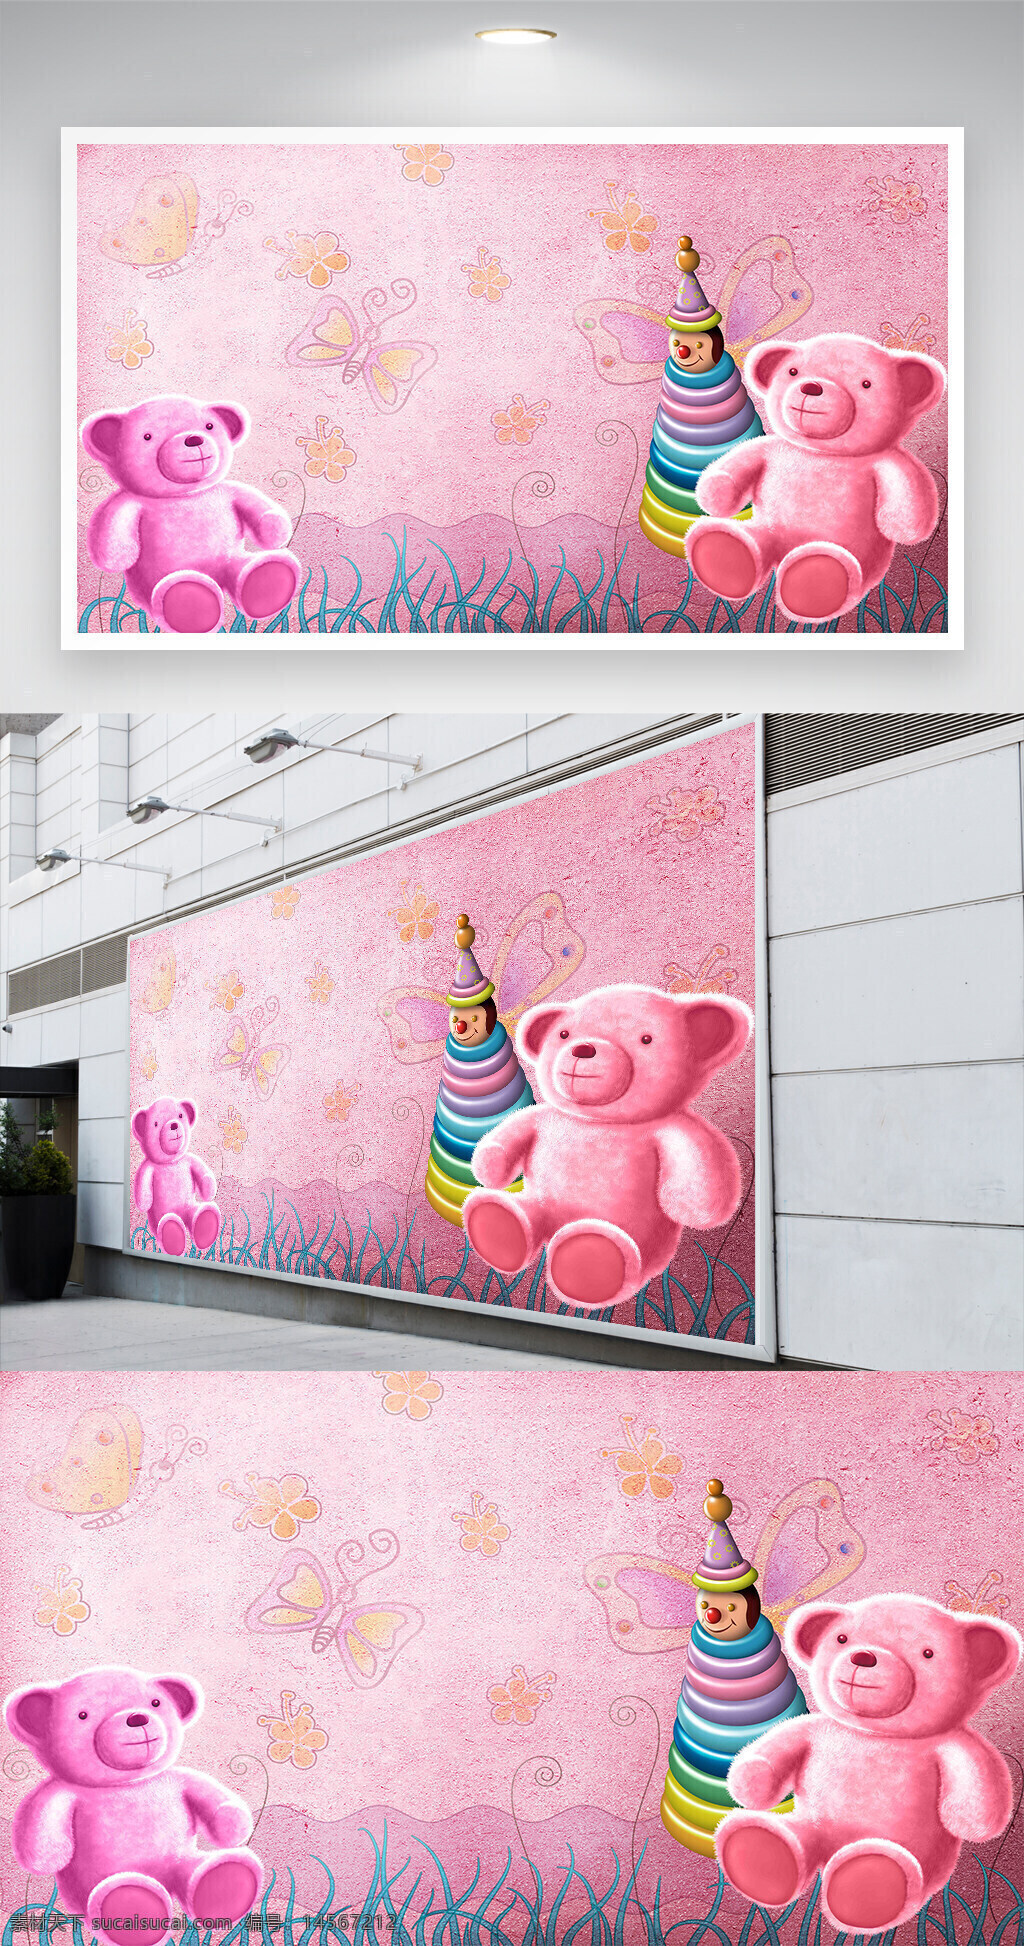 浪漫粉色小熊玩具儿童房背景墙 浪漫粉色 小熊玩具 儿童房背景墙 卡通儿童房背景 公主房背景